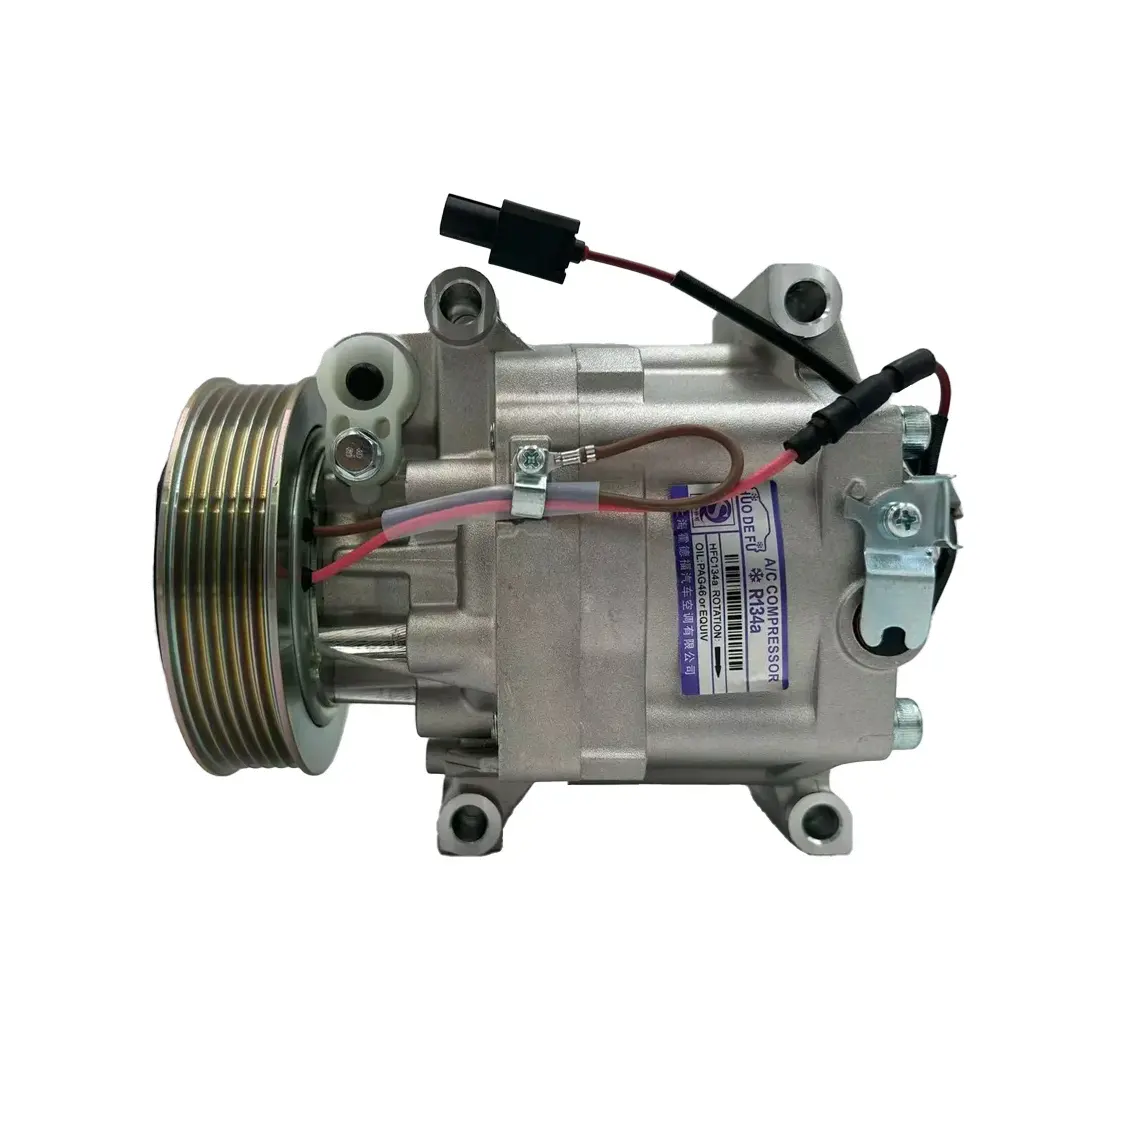 Auto Airconditioning Compressor Ac Compressor Str08 Voor Honda Fit Gk3 Gk5 Gj6 1.3l 2014 38810-5r0-004 388105r0004 Pasku 600754